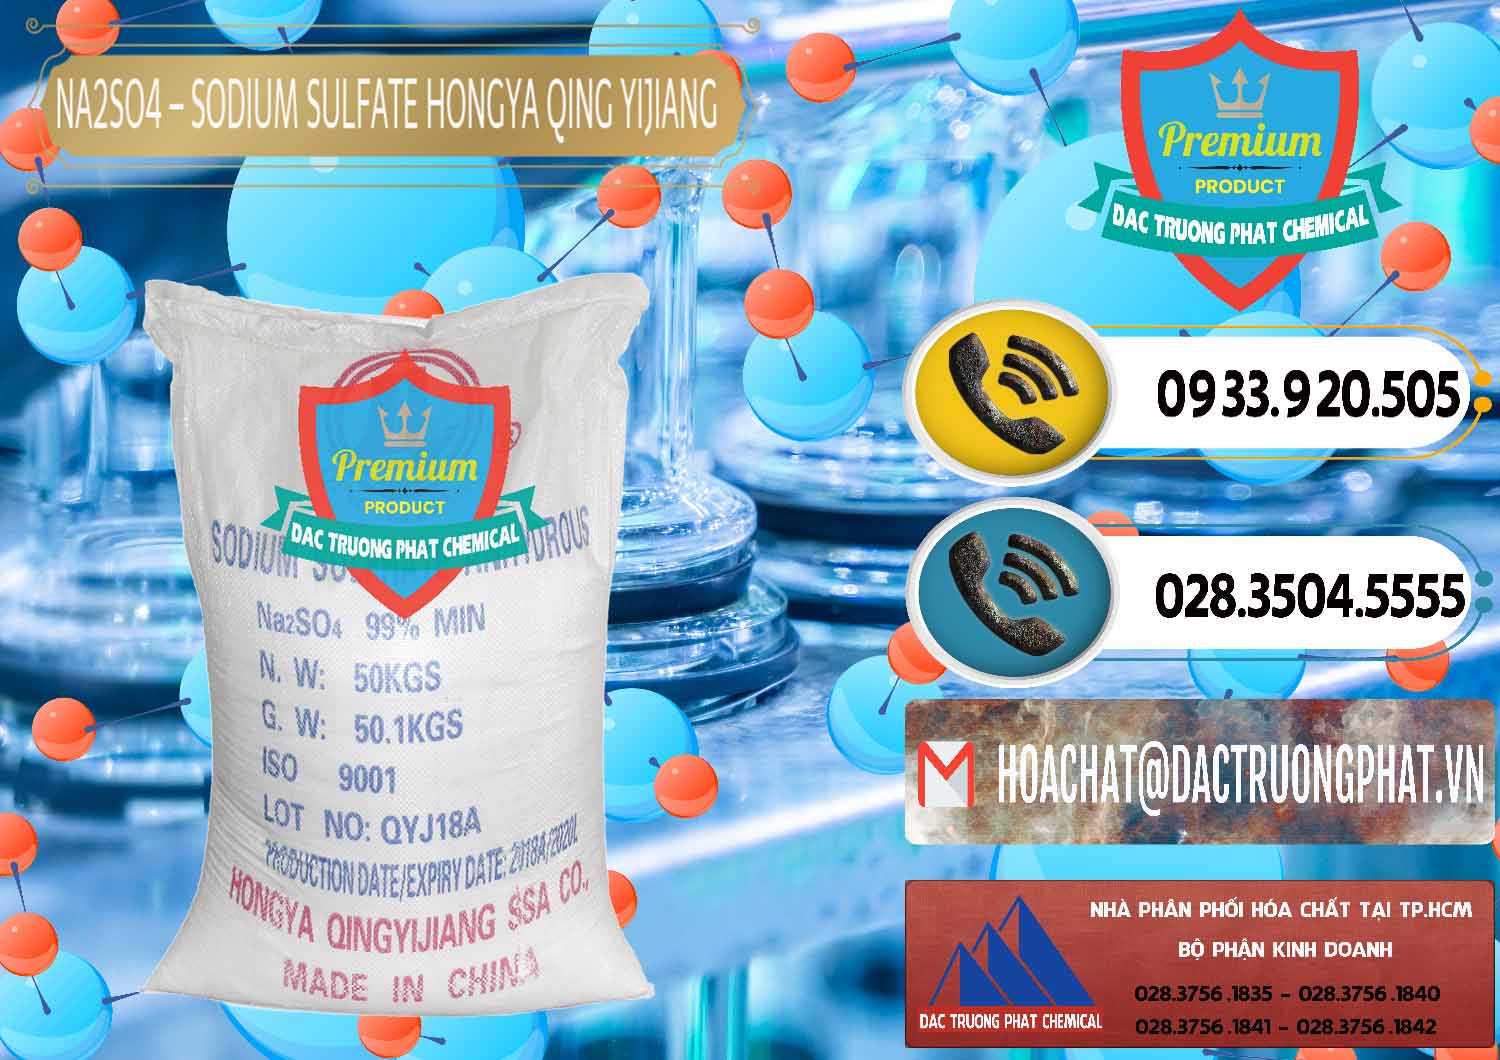 Công ty kinh doanh - bán Sodium Sulphate - Muối Sunfat Na2SO4 Logo Cánh Bườm Hongya Qing Yi Trung Quốc China - 0098 - Công ty chuyên cung ứng & phân phối hóa chất tại TP.HCM - hoachatdetnhuom.vn